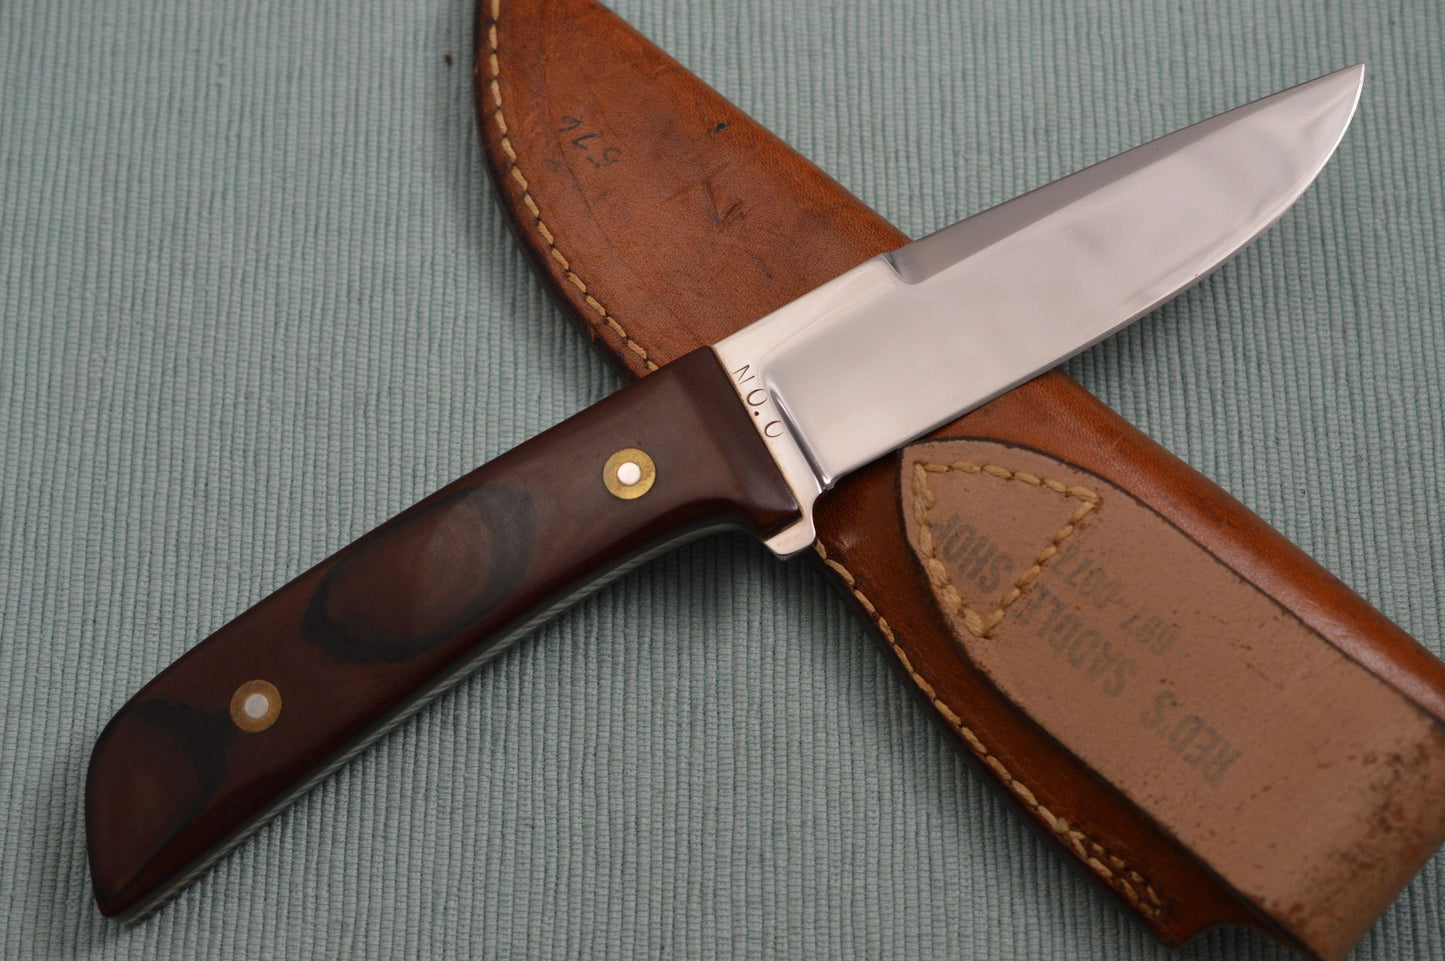 Chubby Hueske Fixed Blade Hunting Knife, Leather Sheath